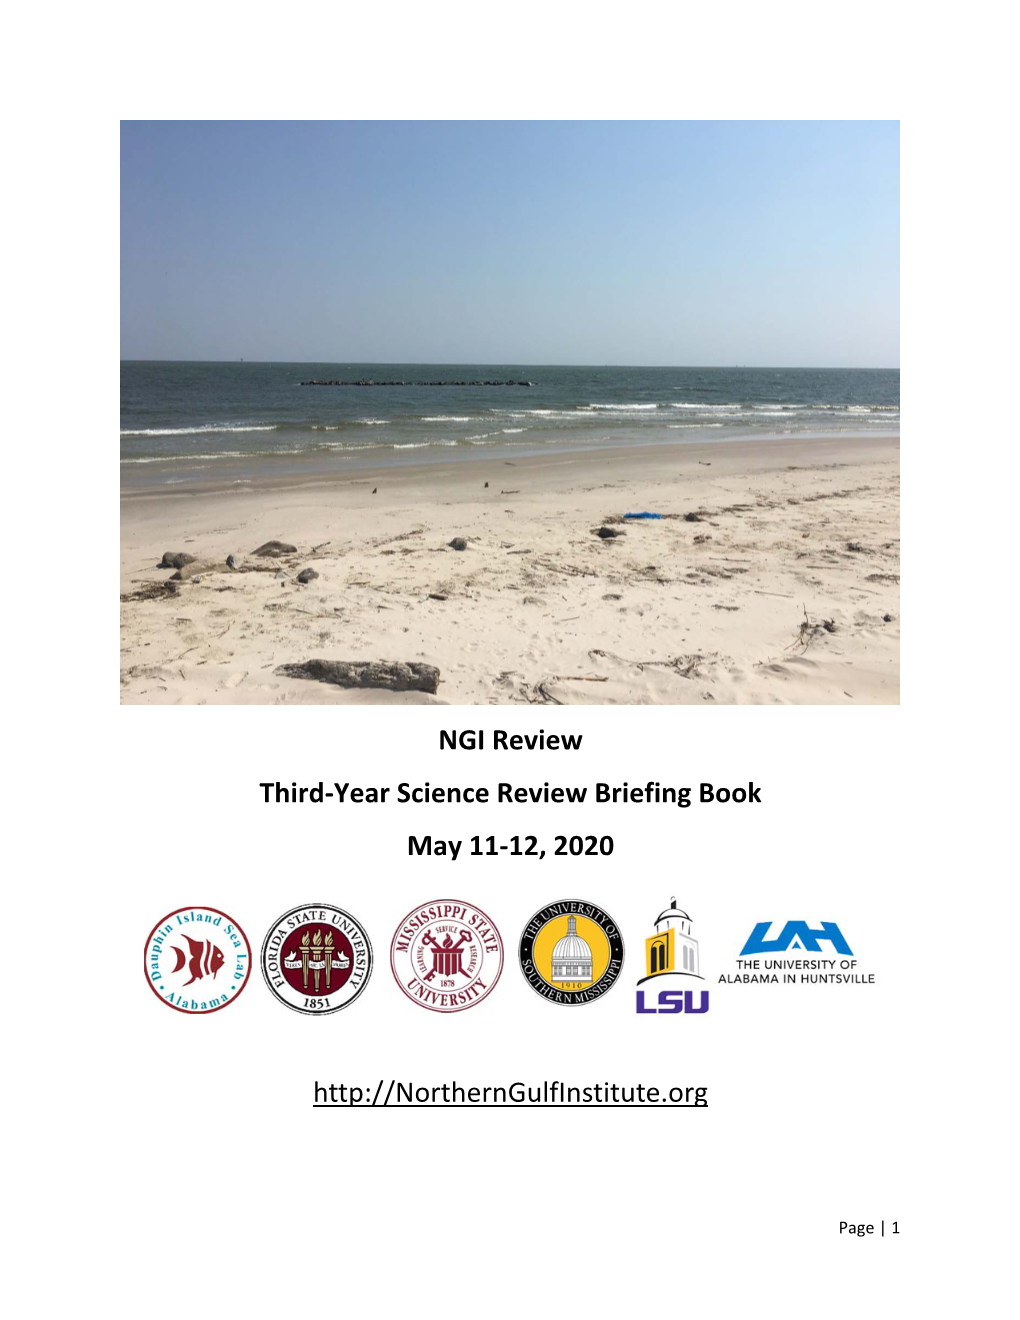 NGI Review Third-Year Science Review Briefing Book May 11-12, 2020